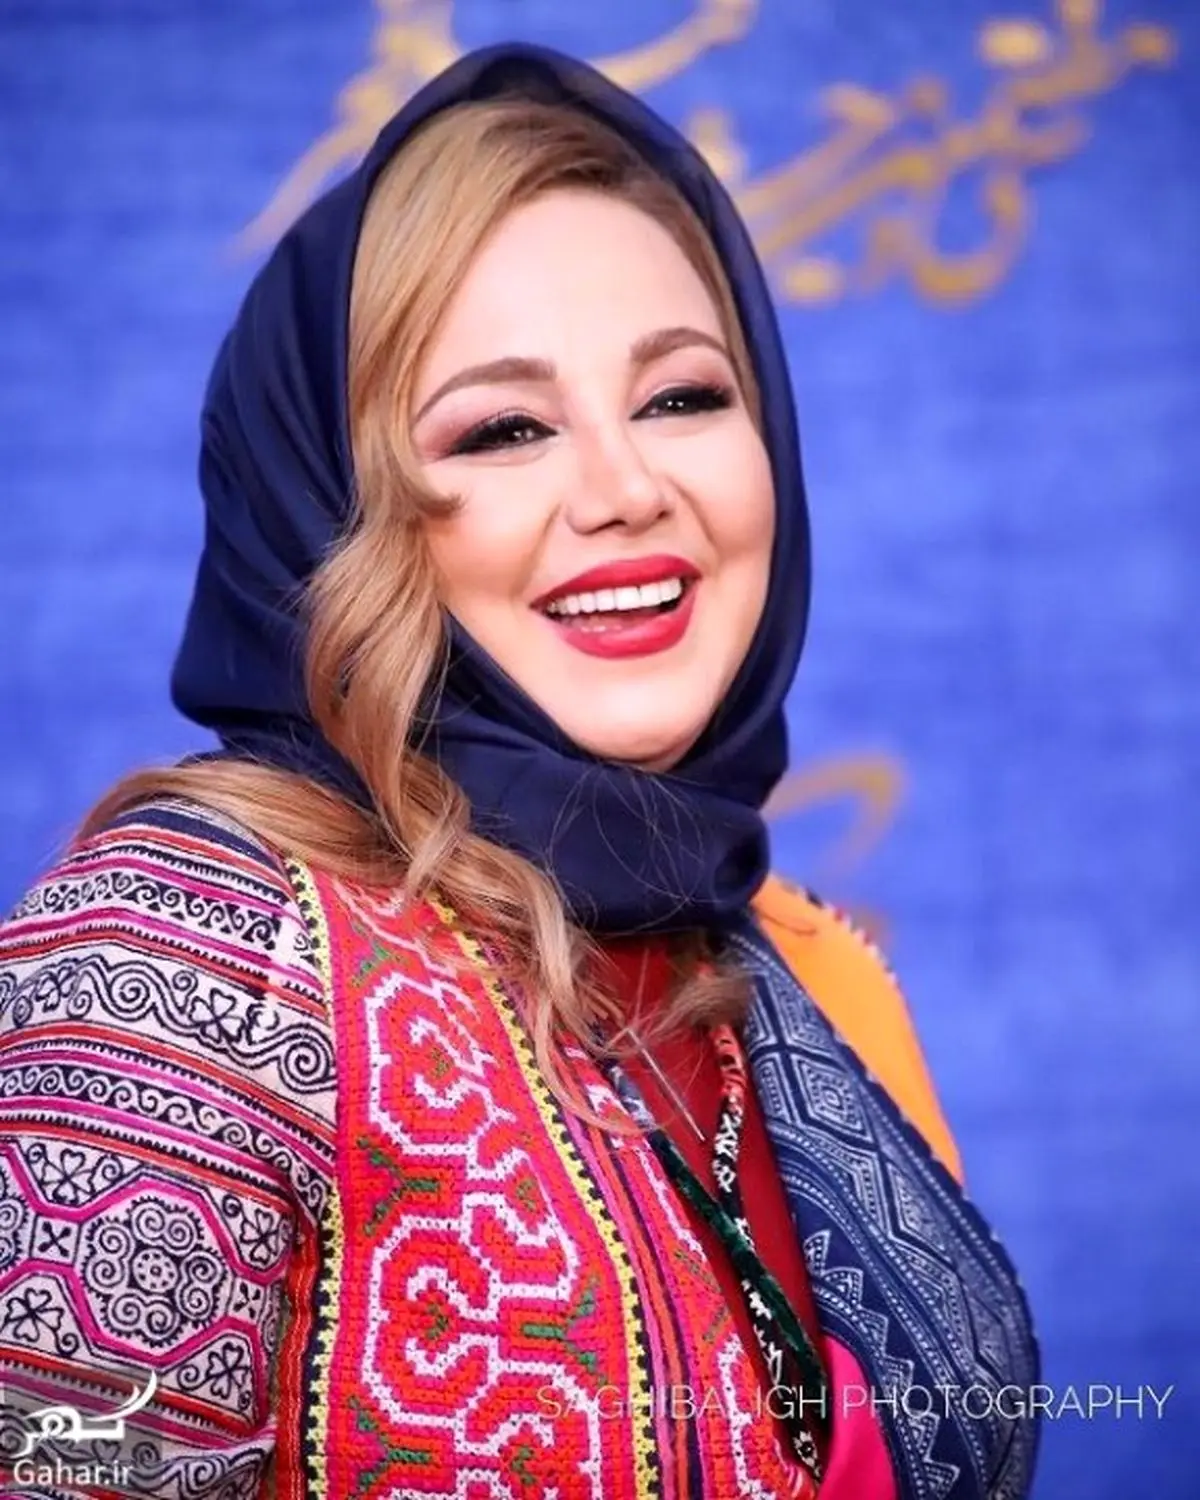 لباس رنگارنگ بهنوش بختیاری در جشنواره فجر | ظاهر پر زرق و برق بهنوش بختیاری سوژه شد